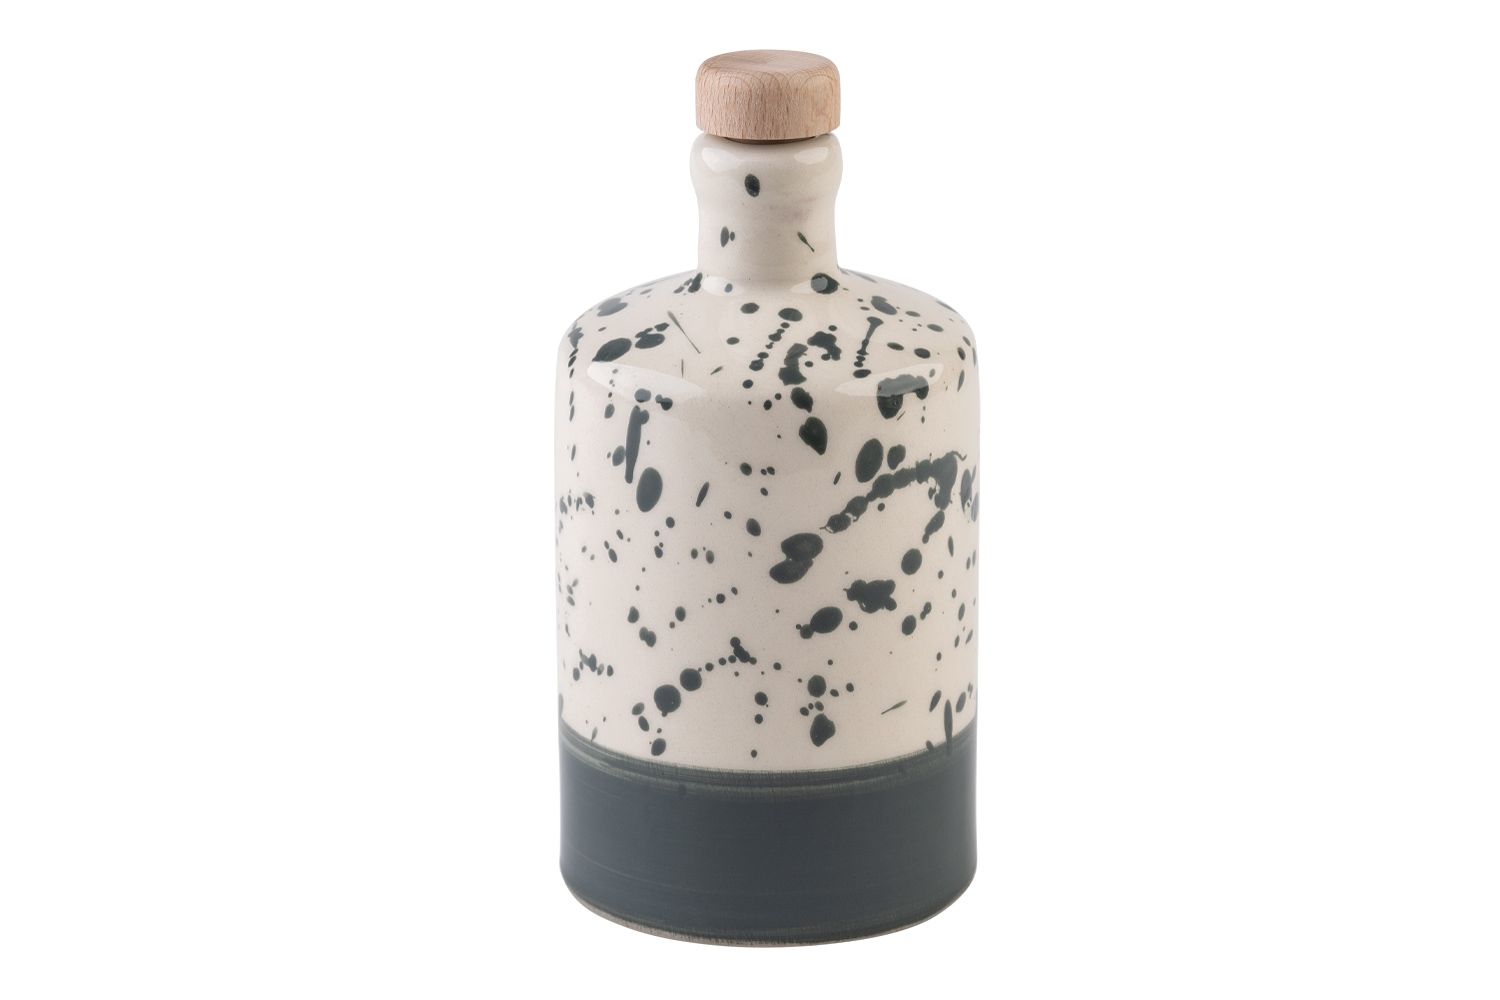 Eine runde, grau-gesprenkelte Olivenölflasche